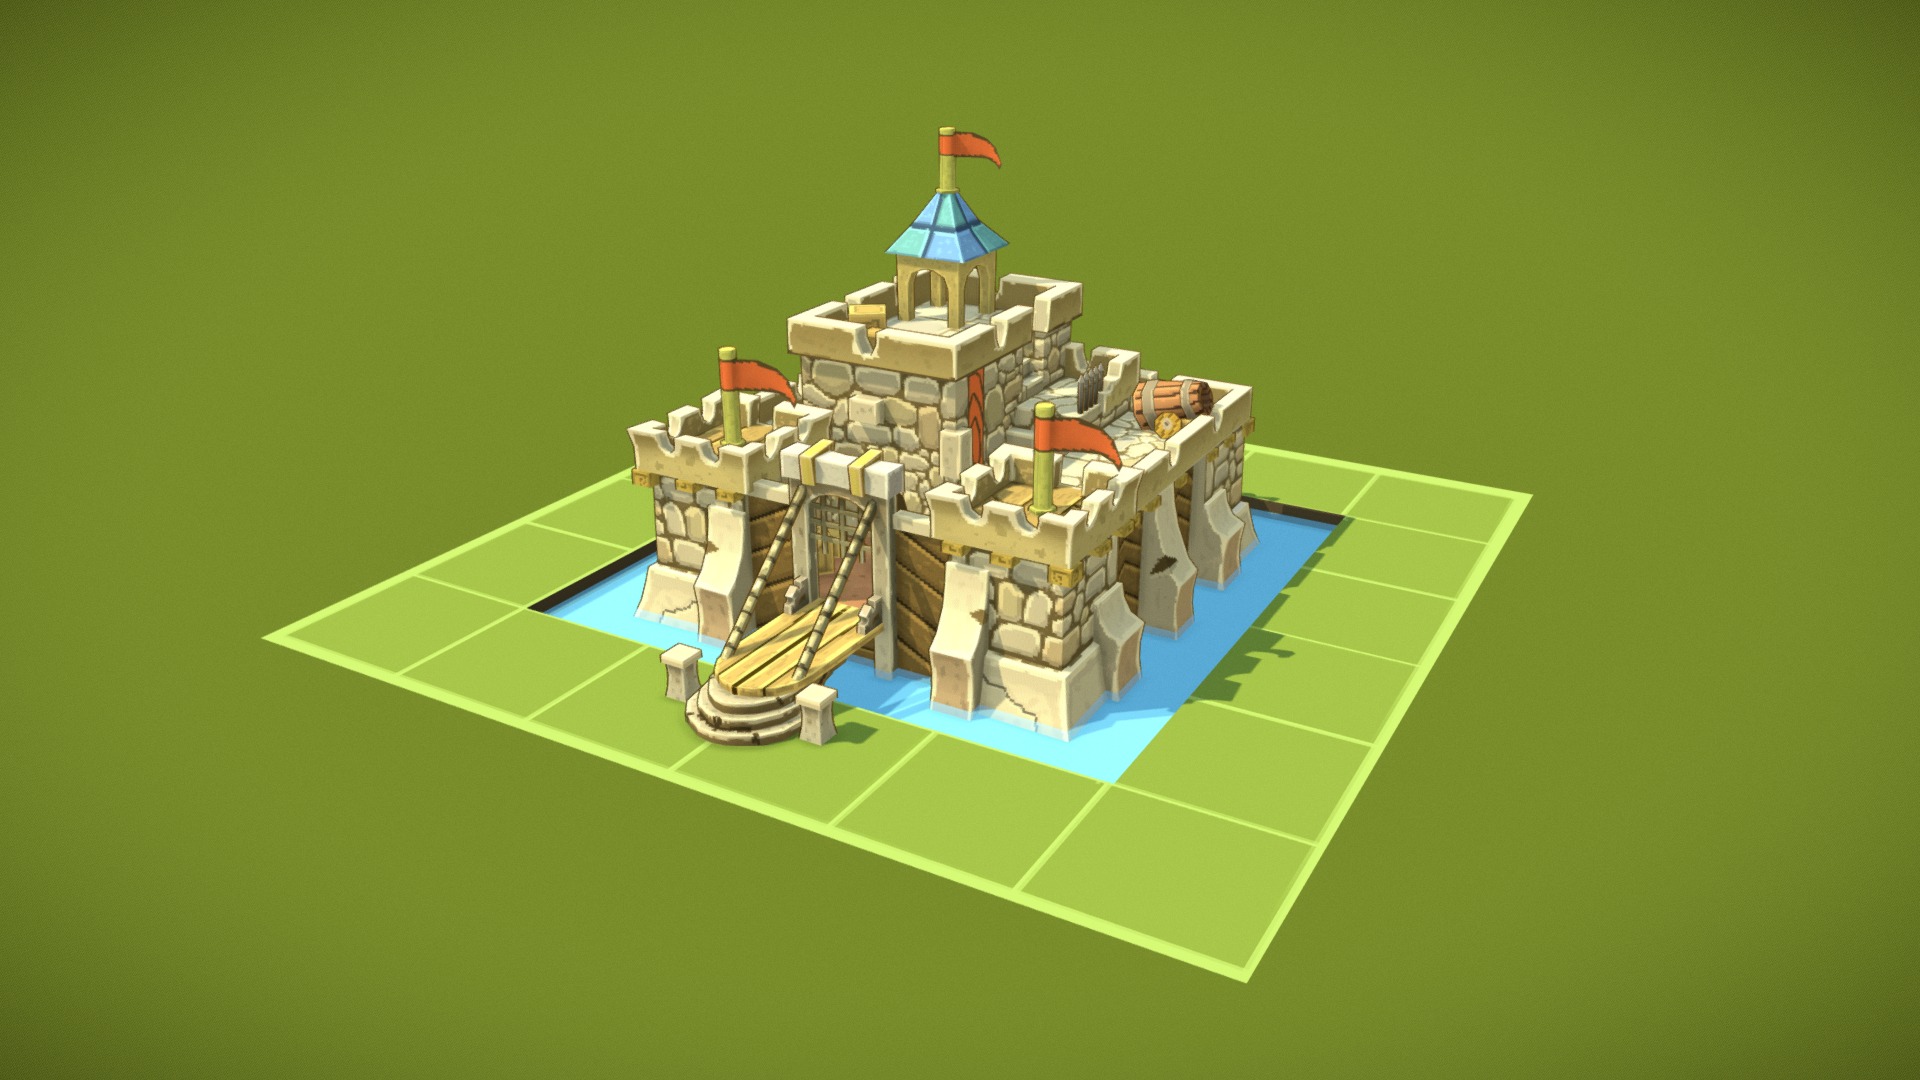 concept by Pykodelbi https://www.deviantart.com/pykodelbi/art/Castle-Fortress-388502961 - Castle fortress - 3D model by makcutka250 3d model